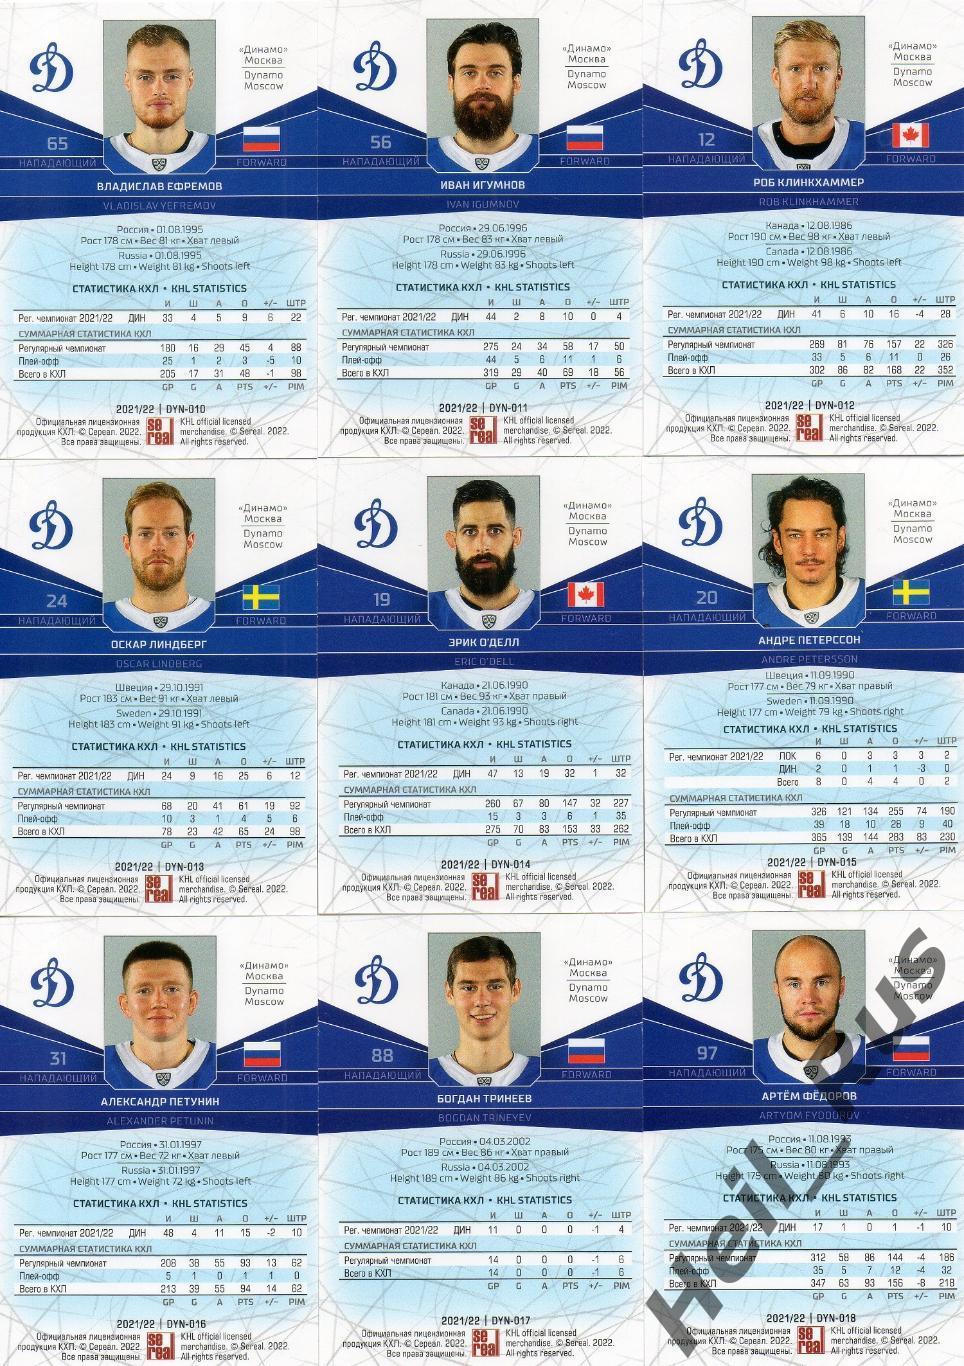 Хоккей. Динамо Москва 20 карточек КХЛ сезон 2021/22 (Войнов, Миронов, Шипачев +) 3